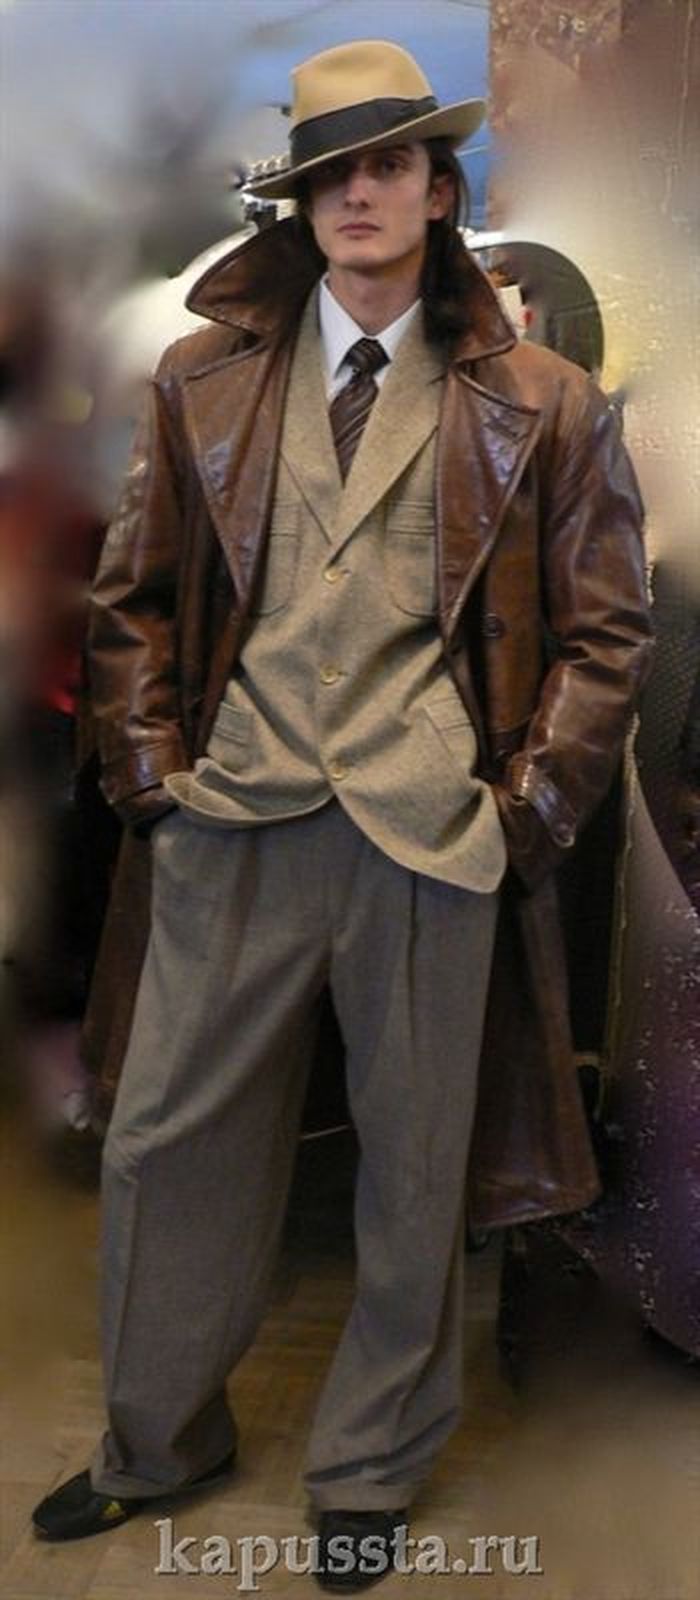 Гангстер в коричневом пальто и шляпе